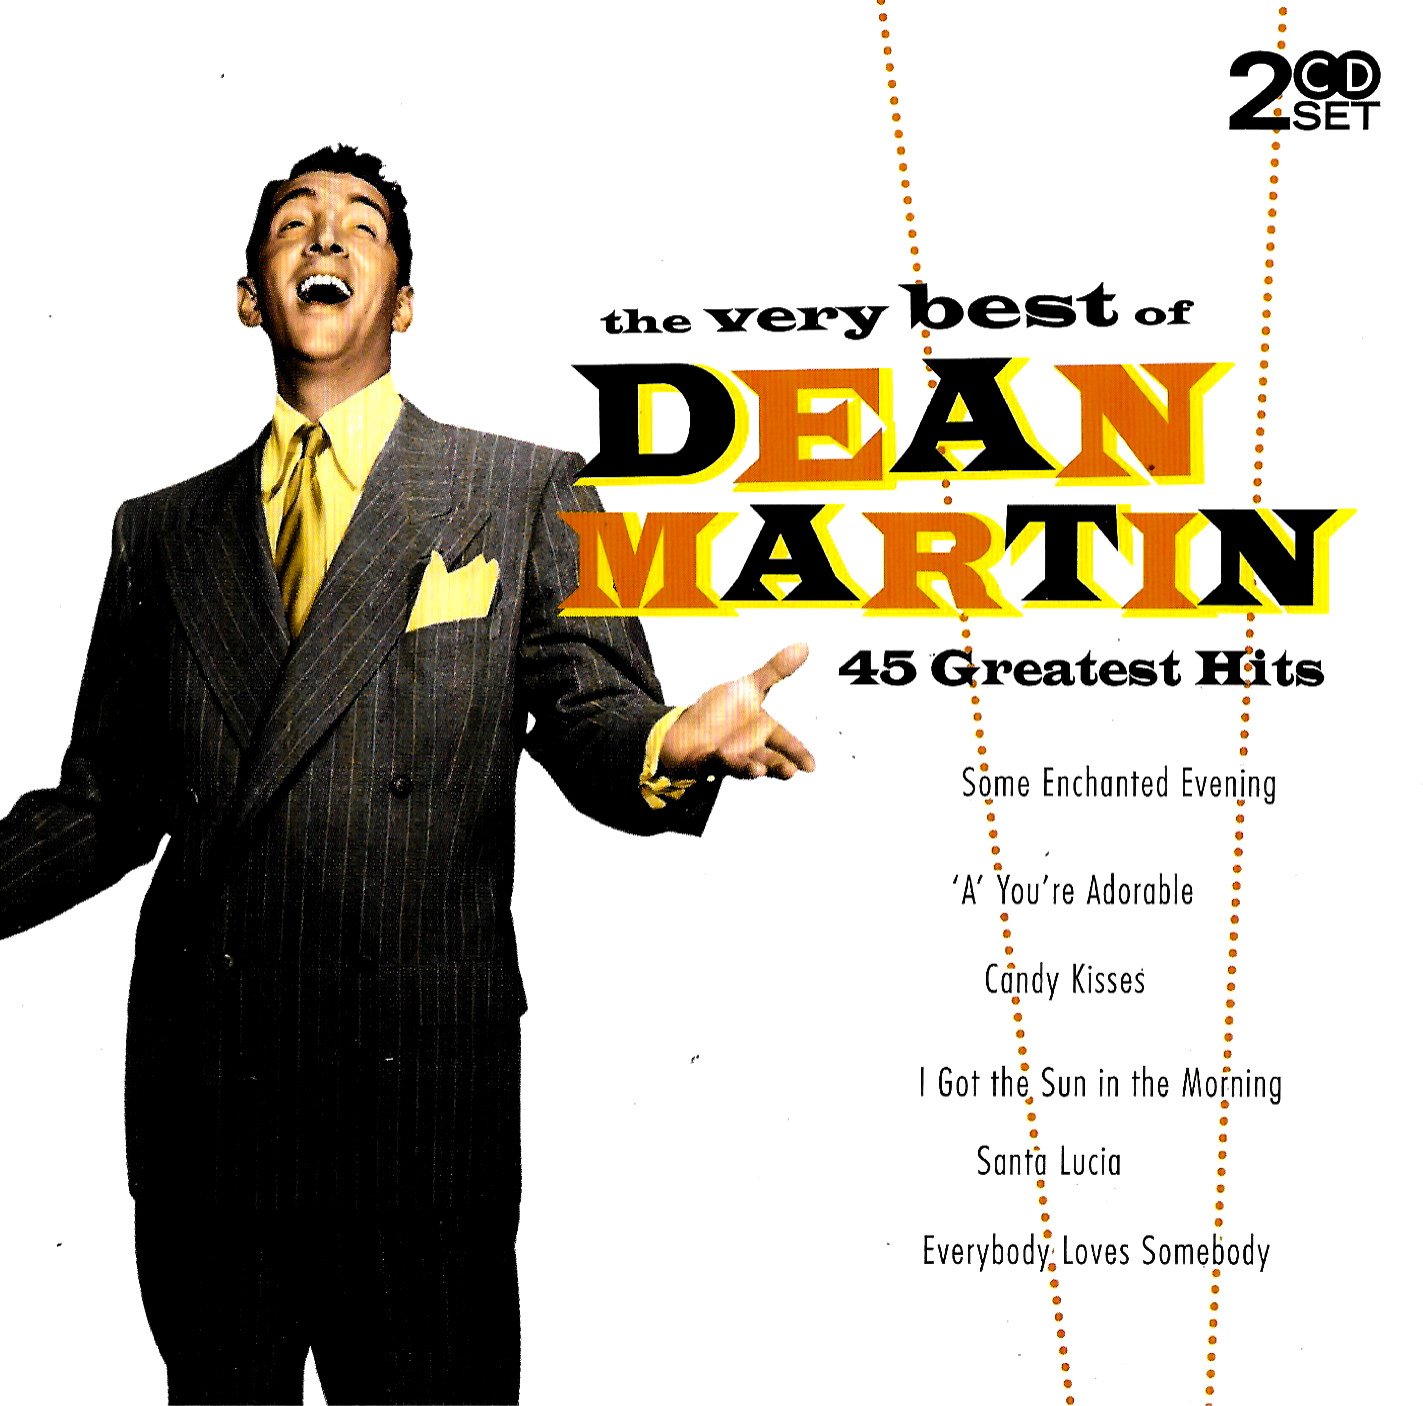 The Very Best Of Dean Martin Volume 2 : Dean Martin - The Very Best Of Dean Martin (2014, CD ... : Volume 2 (dvd, 2003) at the best online prices at ebay!